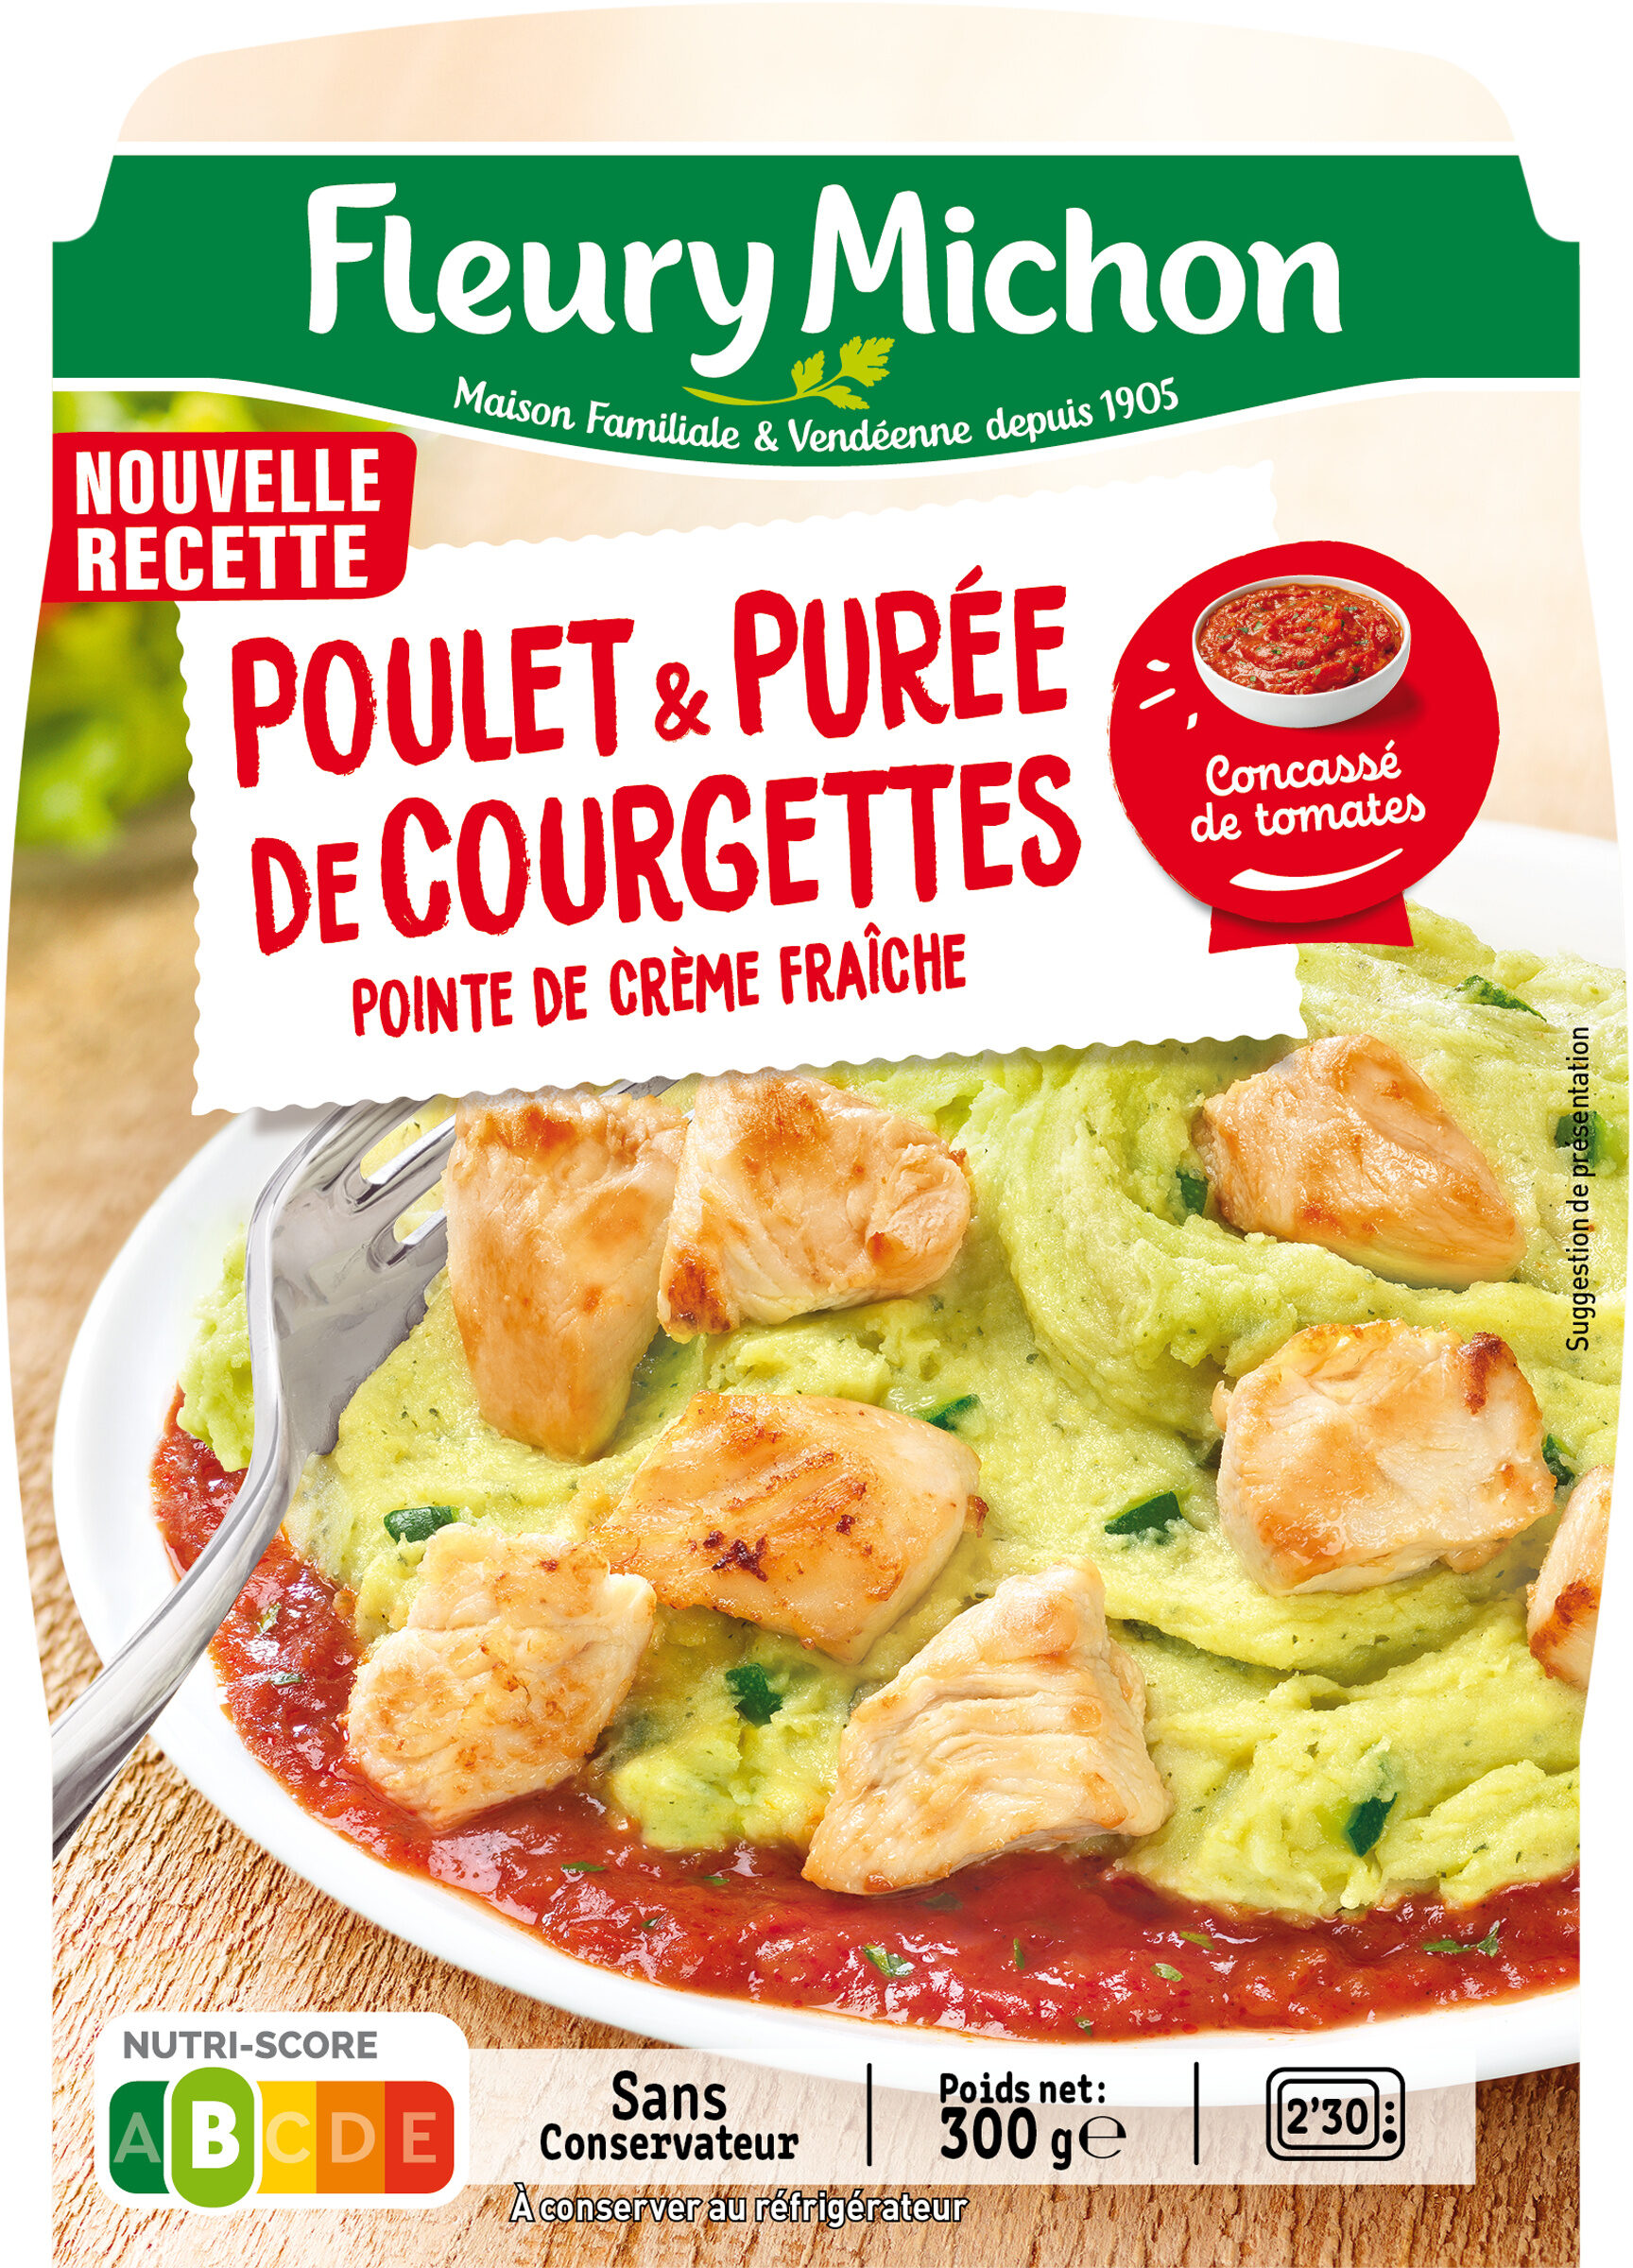 Poulet & Purée de Courgettes pointe de crème fraîche - Producto - fr